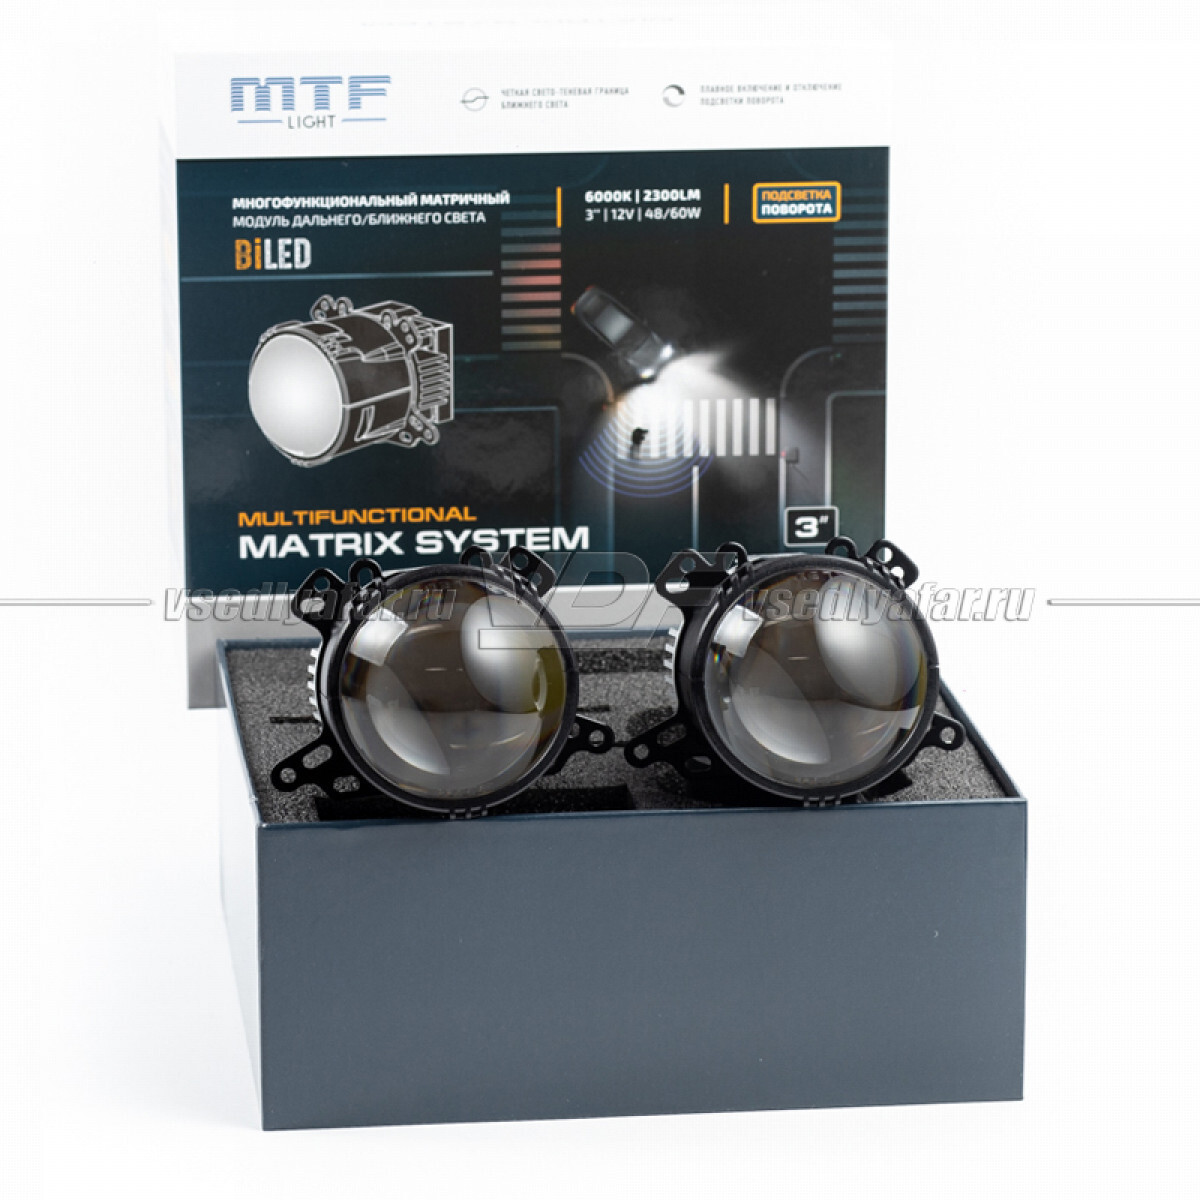 Bi led линзы mtf. MTF-Light Matrix System bi-led 3. MTF Light Matrix System bi-led 3″ — с подсветкой поворота. Комплект би-диодных линз MTF Light Matrix System 3.0 6000k. Матричная линза bi-led MTF-Light Multifunctional Matrix System 3.0.